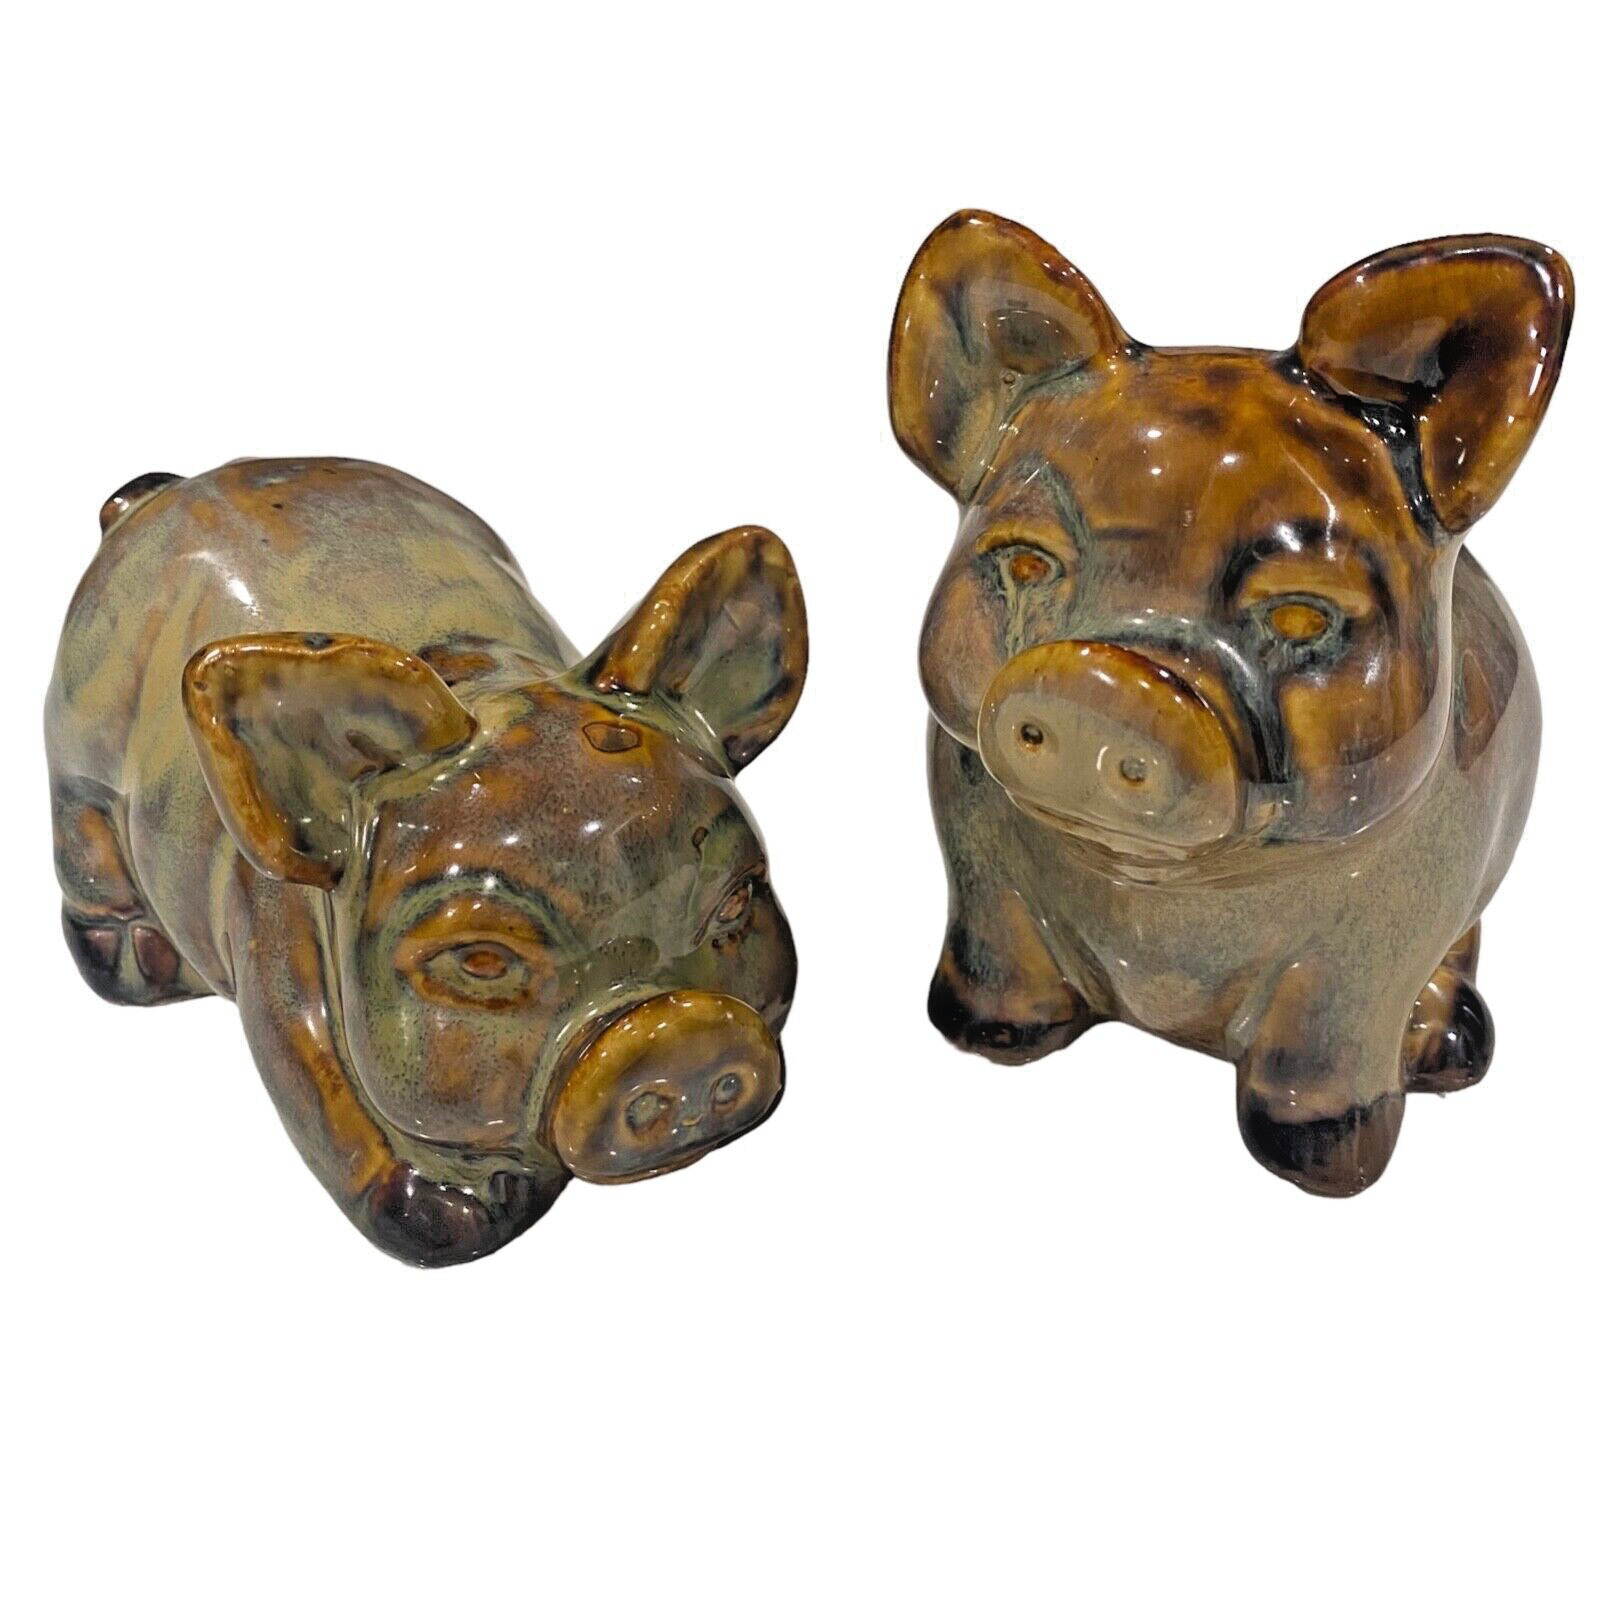 Vintage Ceramic Pig Figurines Brown & Gold Speckled Drip Glaze Set of 2